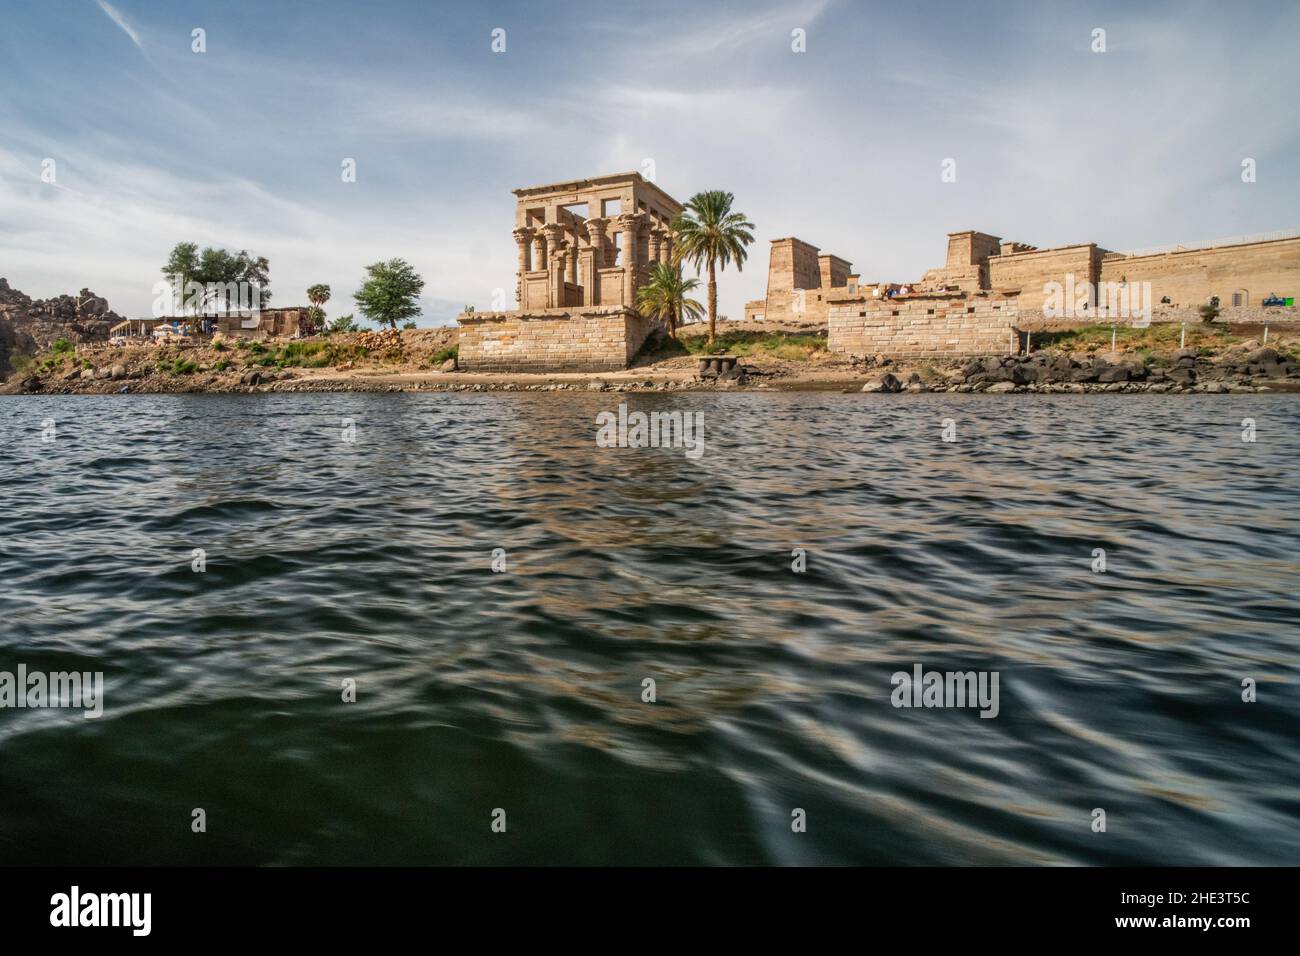 El quiosco de Trajano, una porción de la era romana del complejo del templo de Philae cerca de Aswan, Egpyt visto desde el agua. Foto de stock